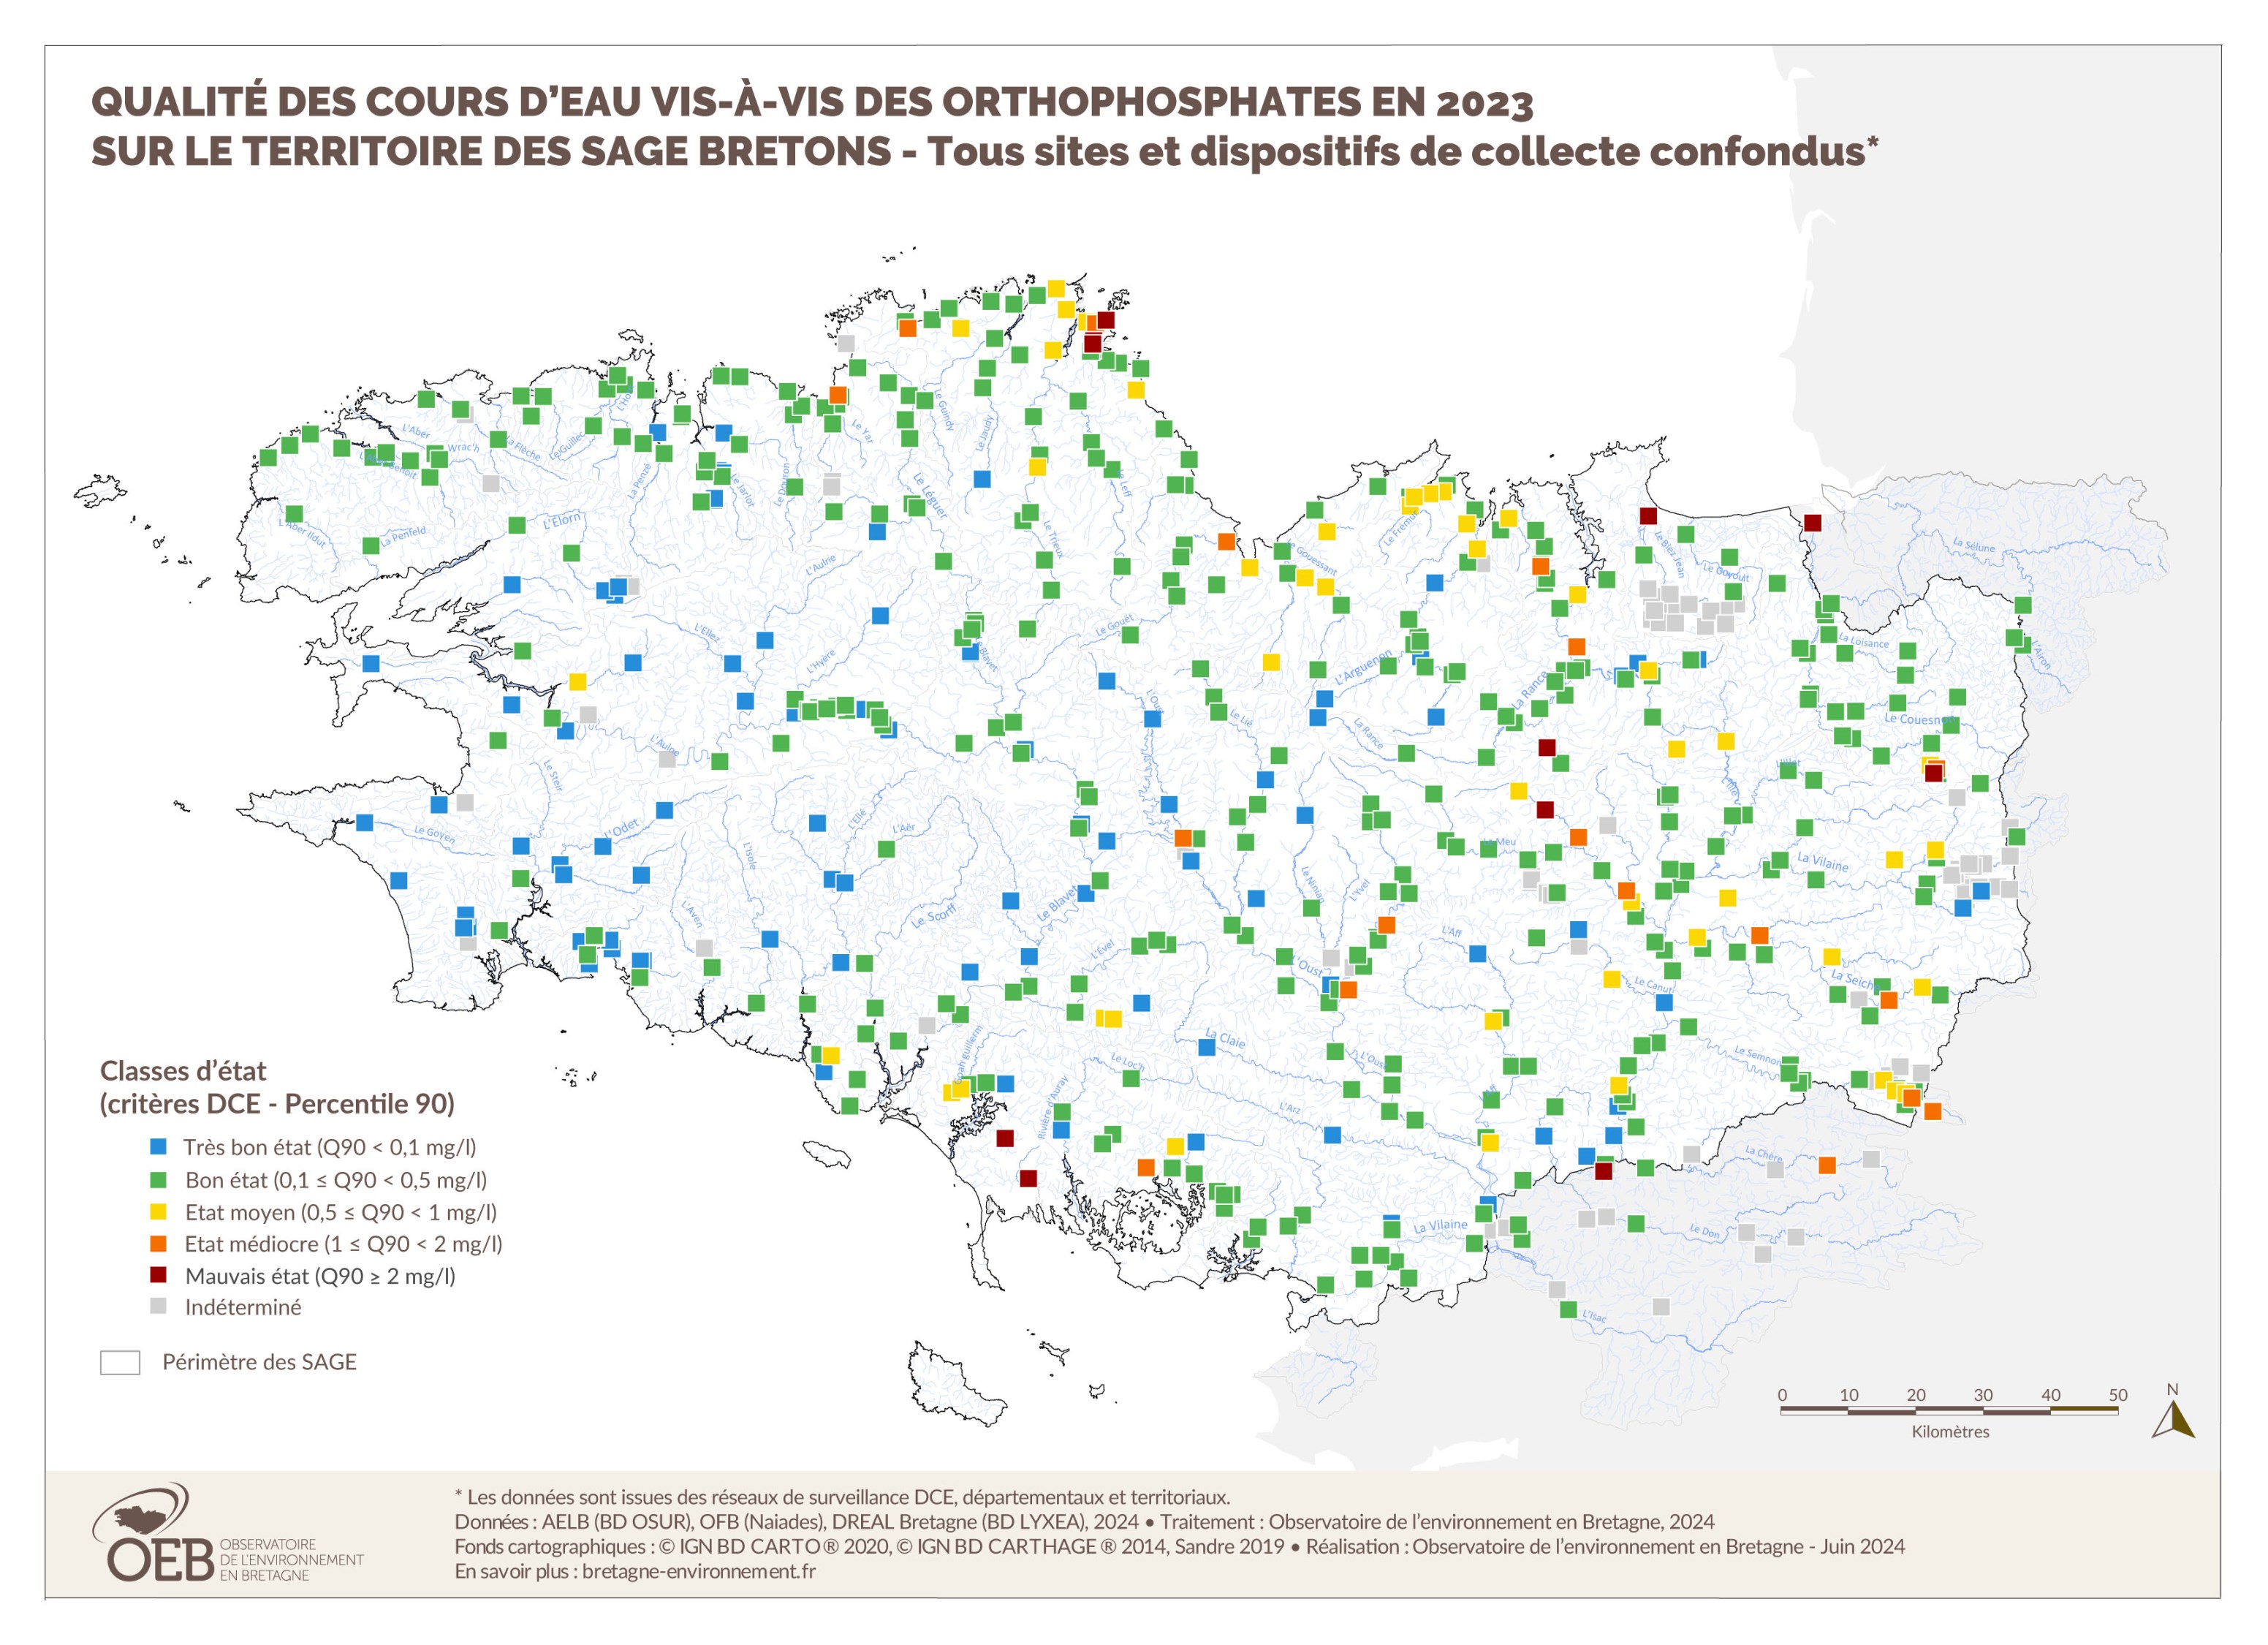 Qualité des cours d'eau bretons vis-à-vis des orthophosphates en 2023